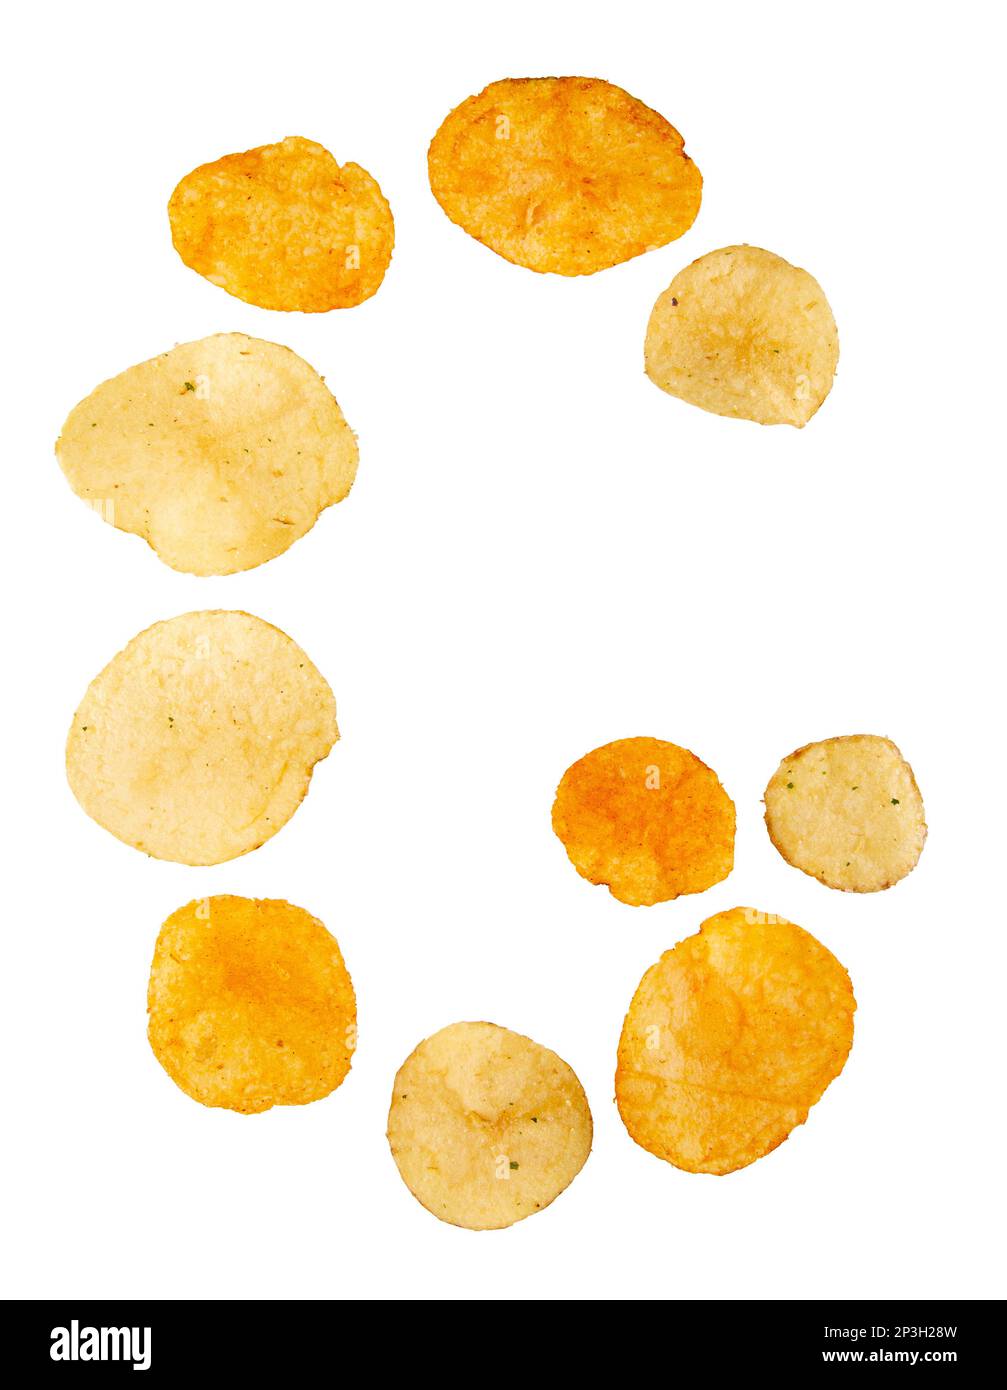 Lettre G faite de chips de pomme de terre et isolée sur fond blanc. Concept de l'alphabet alimentaire. Une lettre de l'ensemble de police de puce de pomme de terre facile à empiler. Banque D'Images